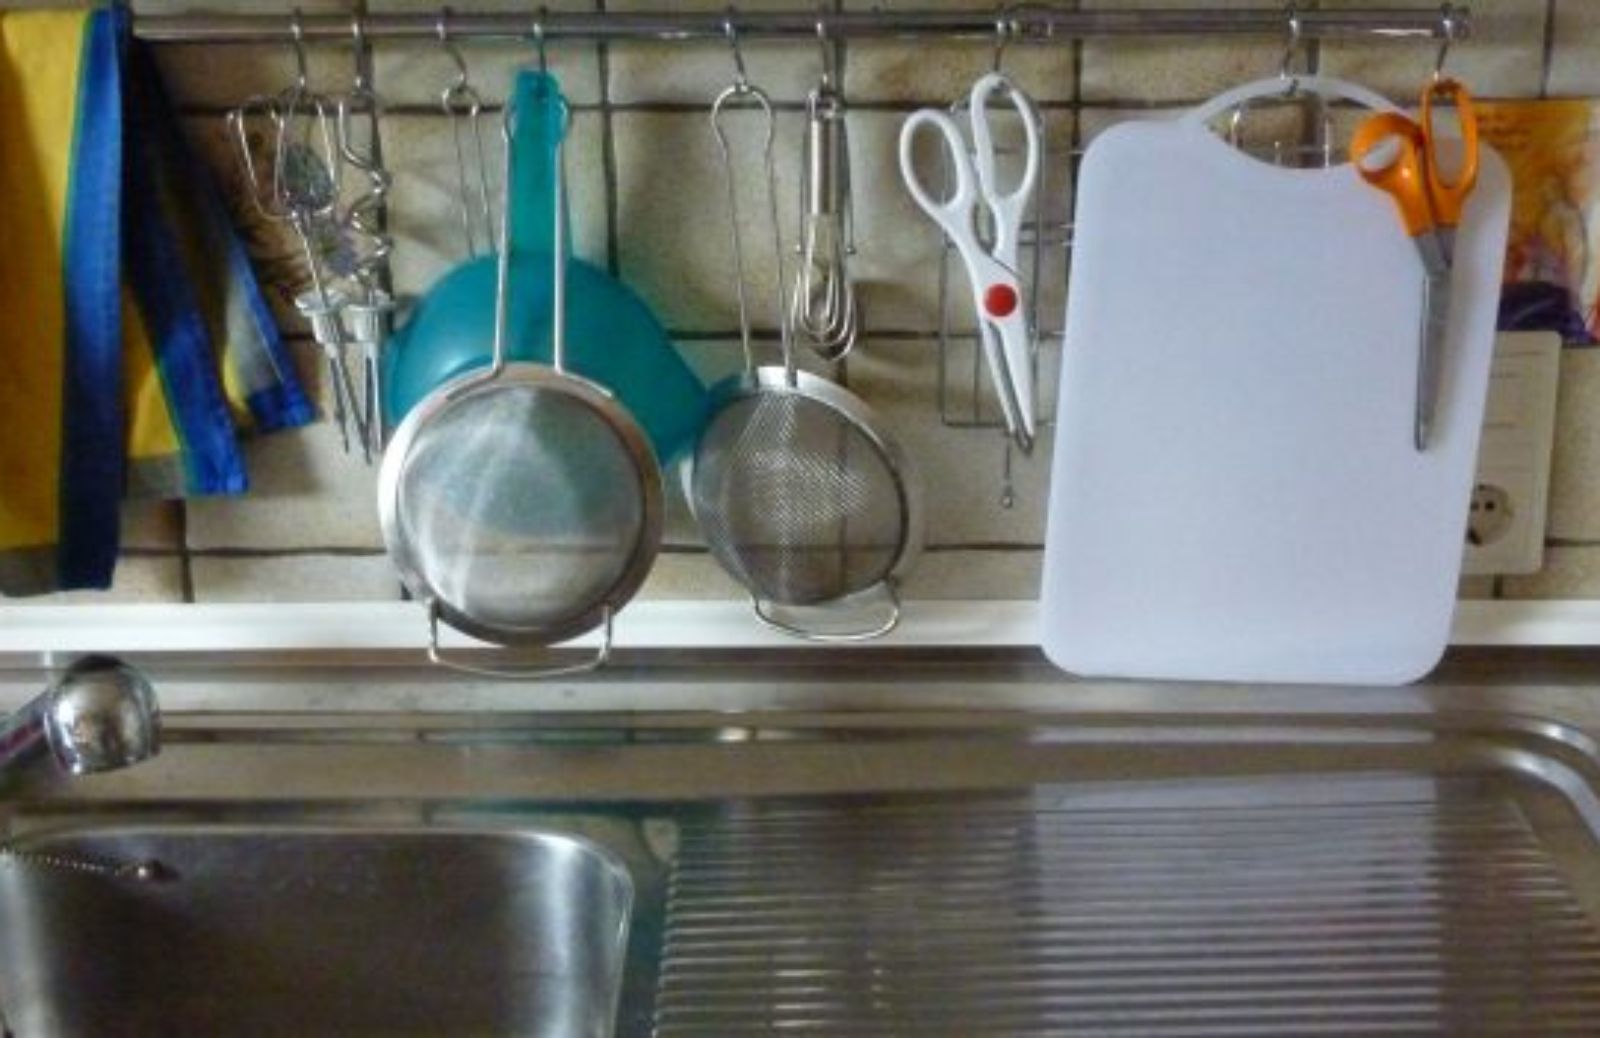 Come pulire la cucina con prodotti naturali